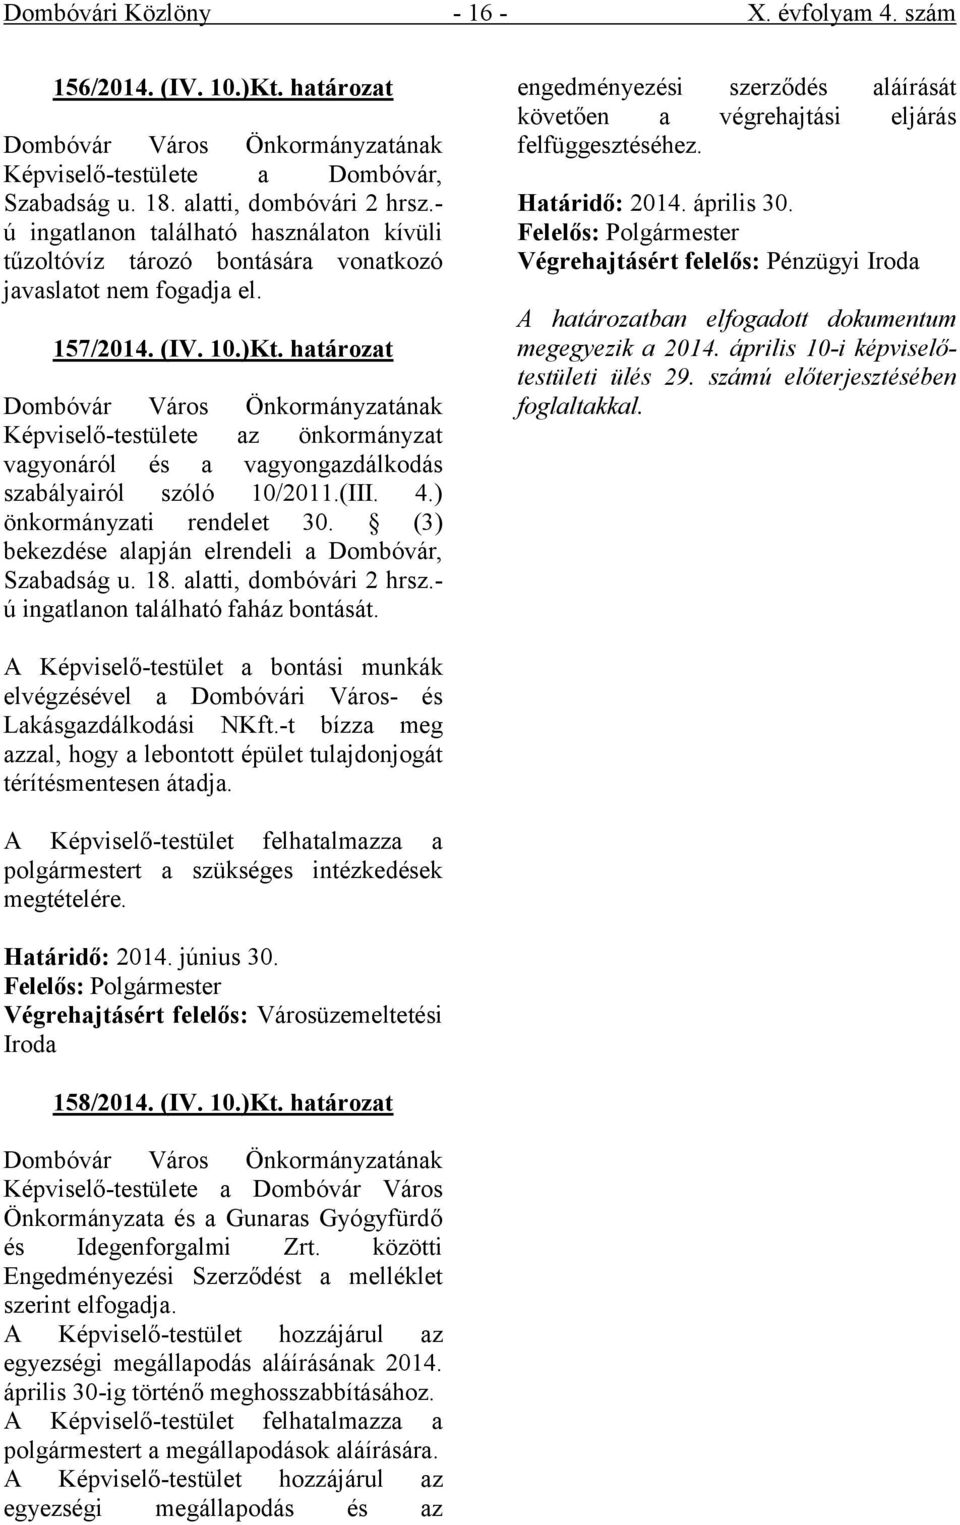 határozat Képviselő-testülete az önkormányzat vagyonáról és a vagyongazdálkodás szabályairól szóló 10/2011.(III. 4.) önkormányzati rendelet 30. (3) bekezdése alapján elrendeli a Dombóvár, Szabadság u.